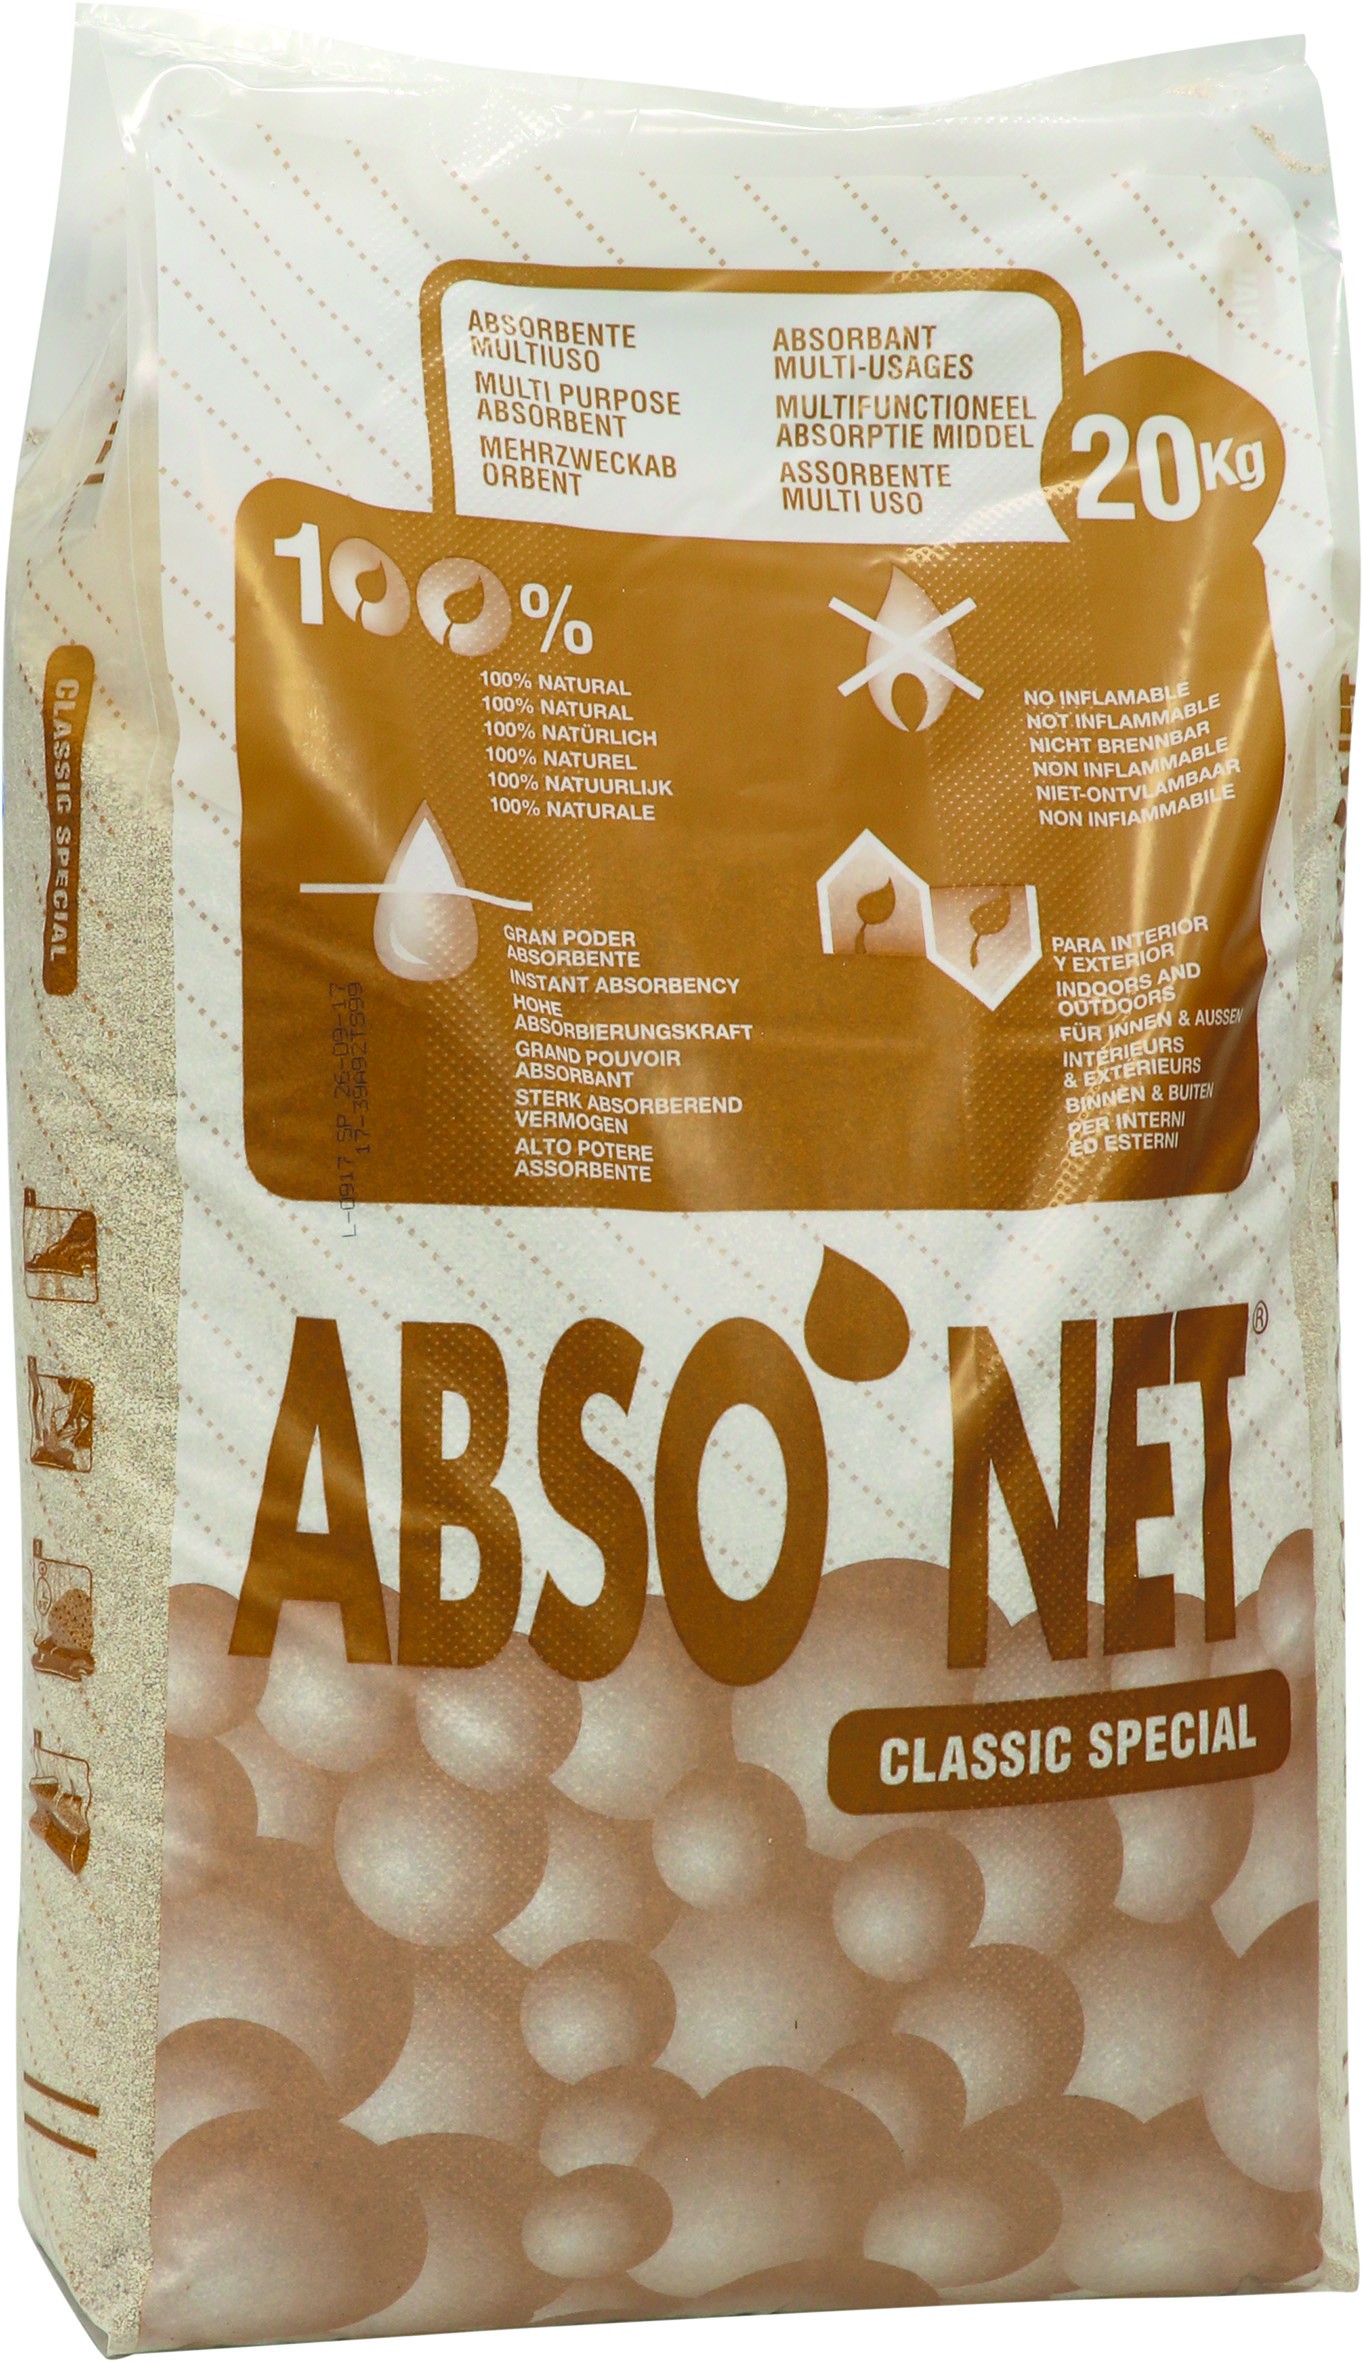 https://www.matoutils.fr/9292/abso-net-absorbant-mineral-sepiolite-industrie-20kgs-18550.jpg